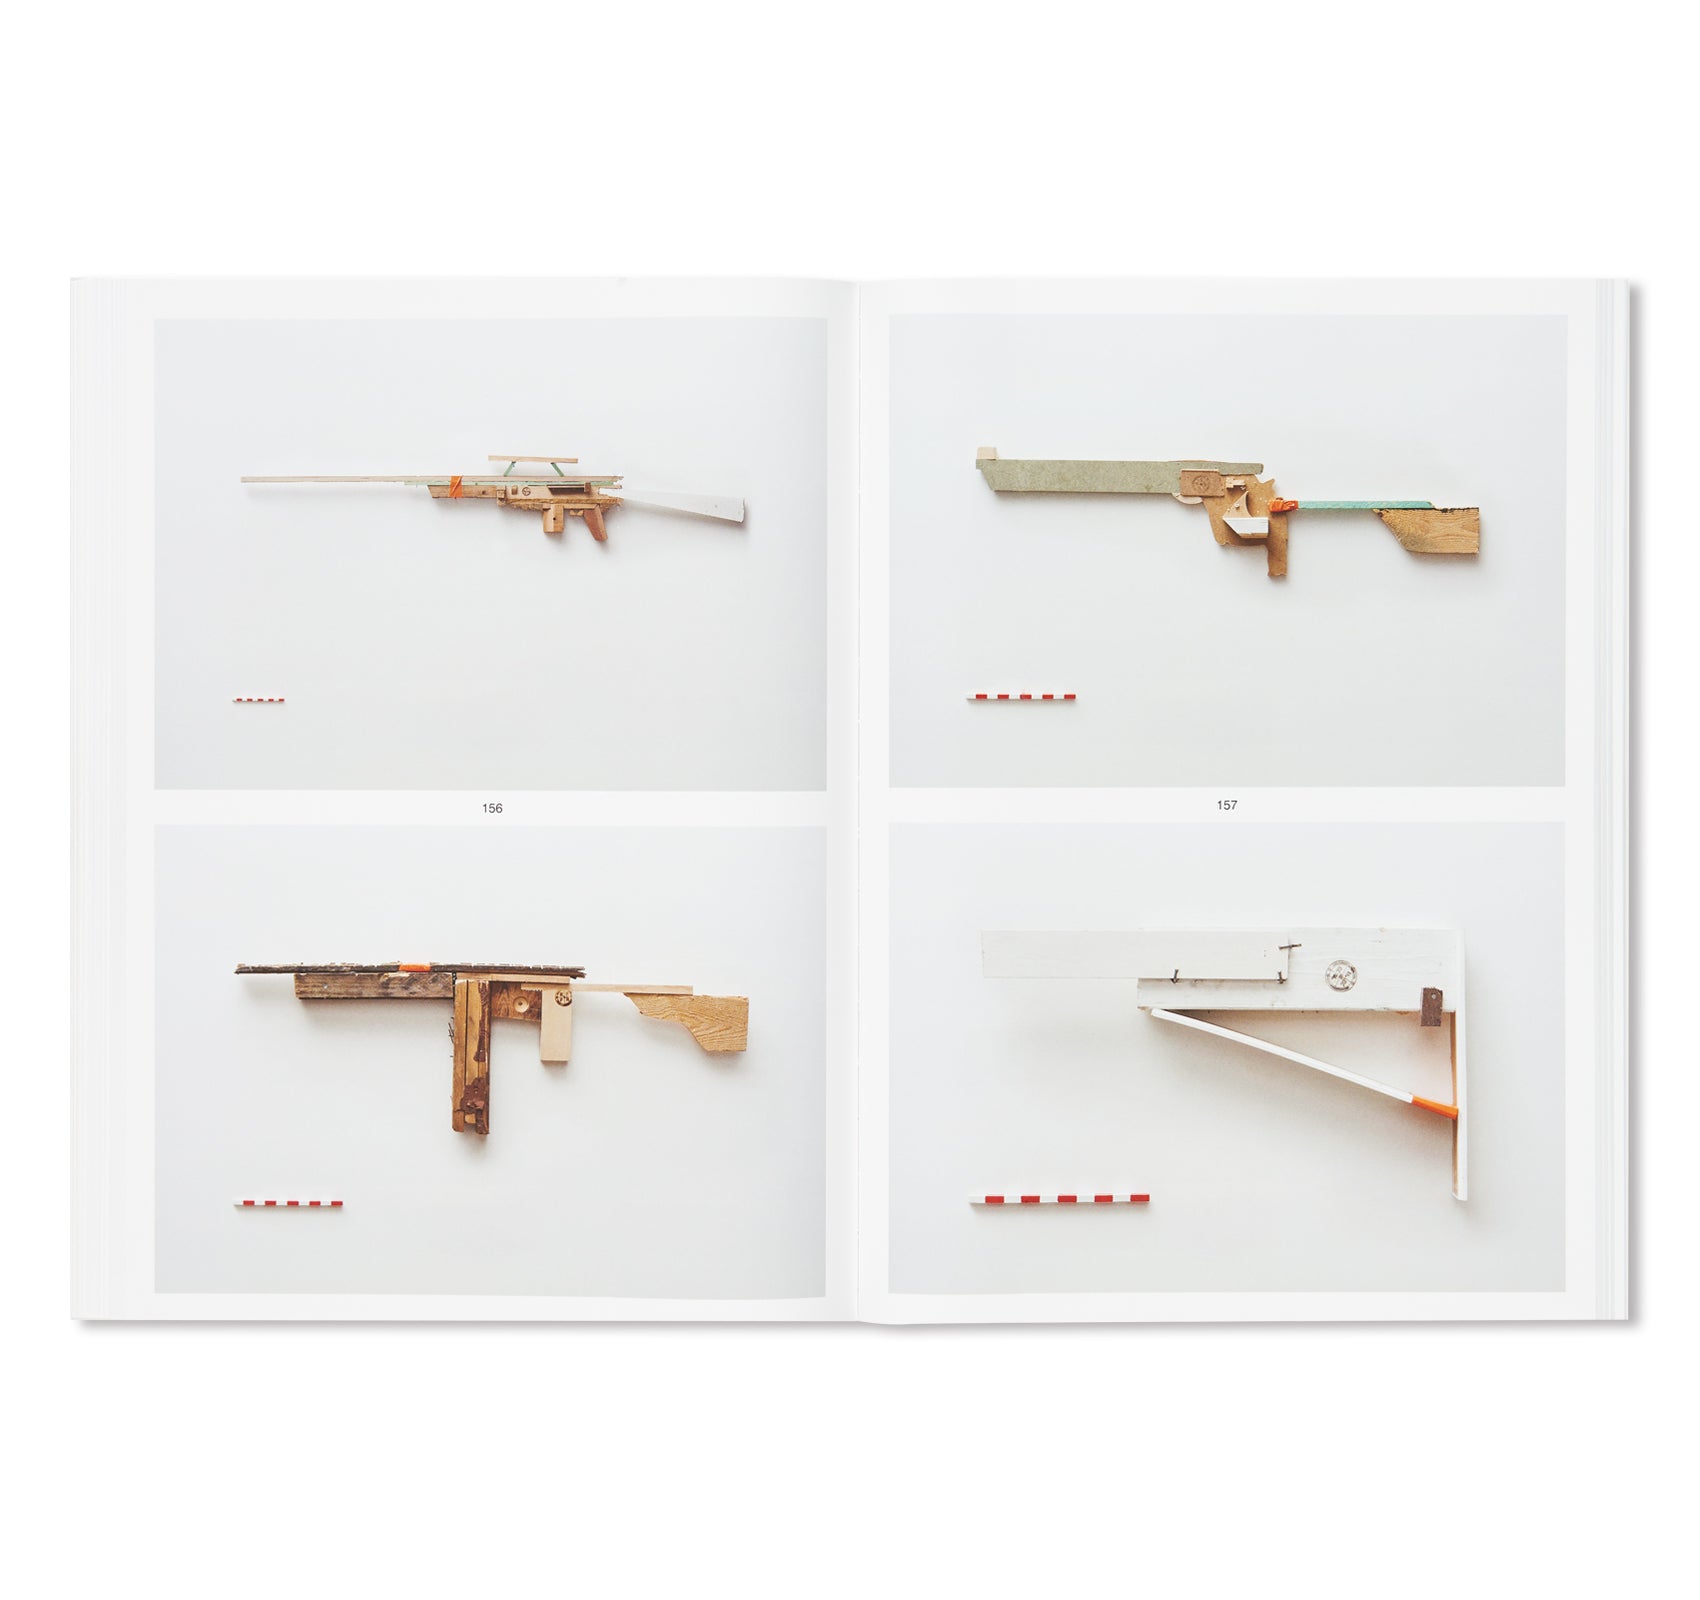 GUNS by Robbert & Frank, Frank & Robbert